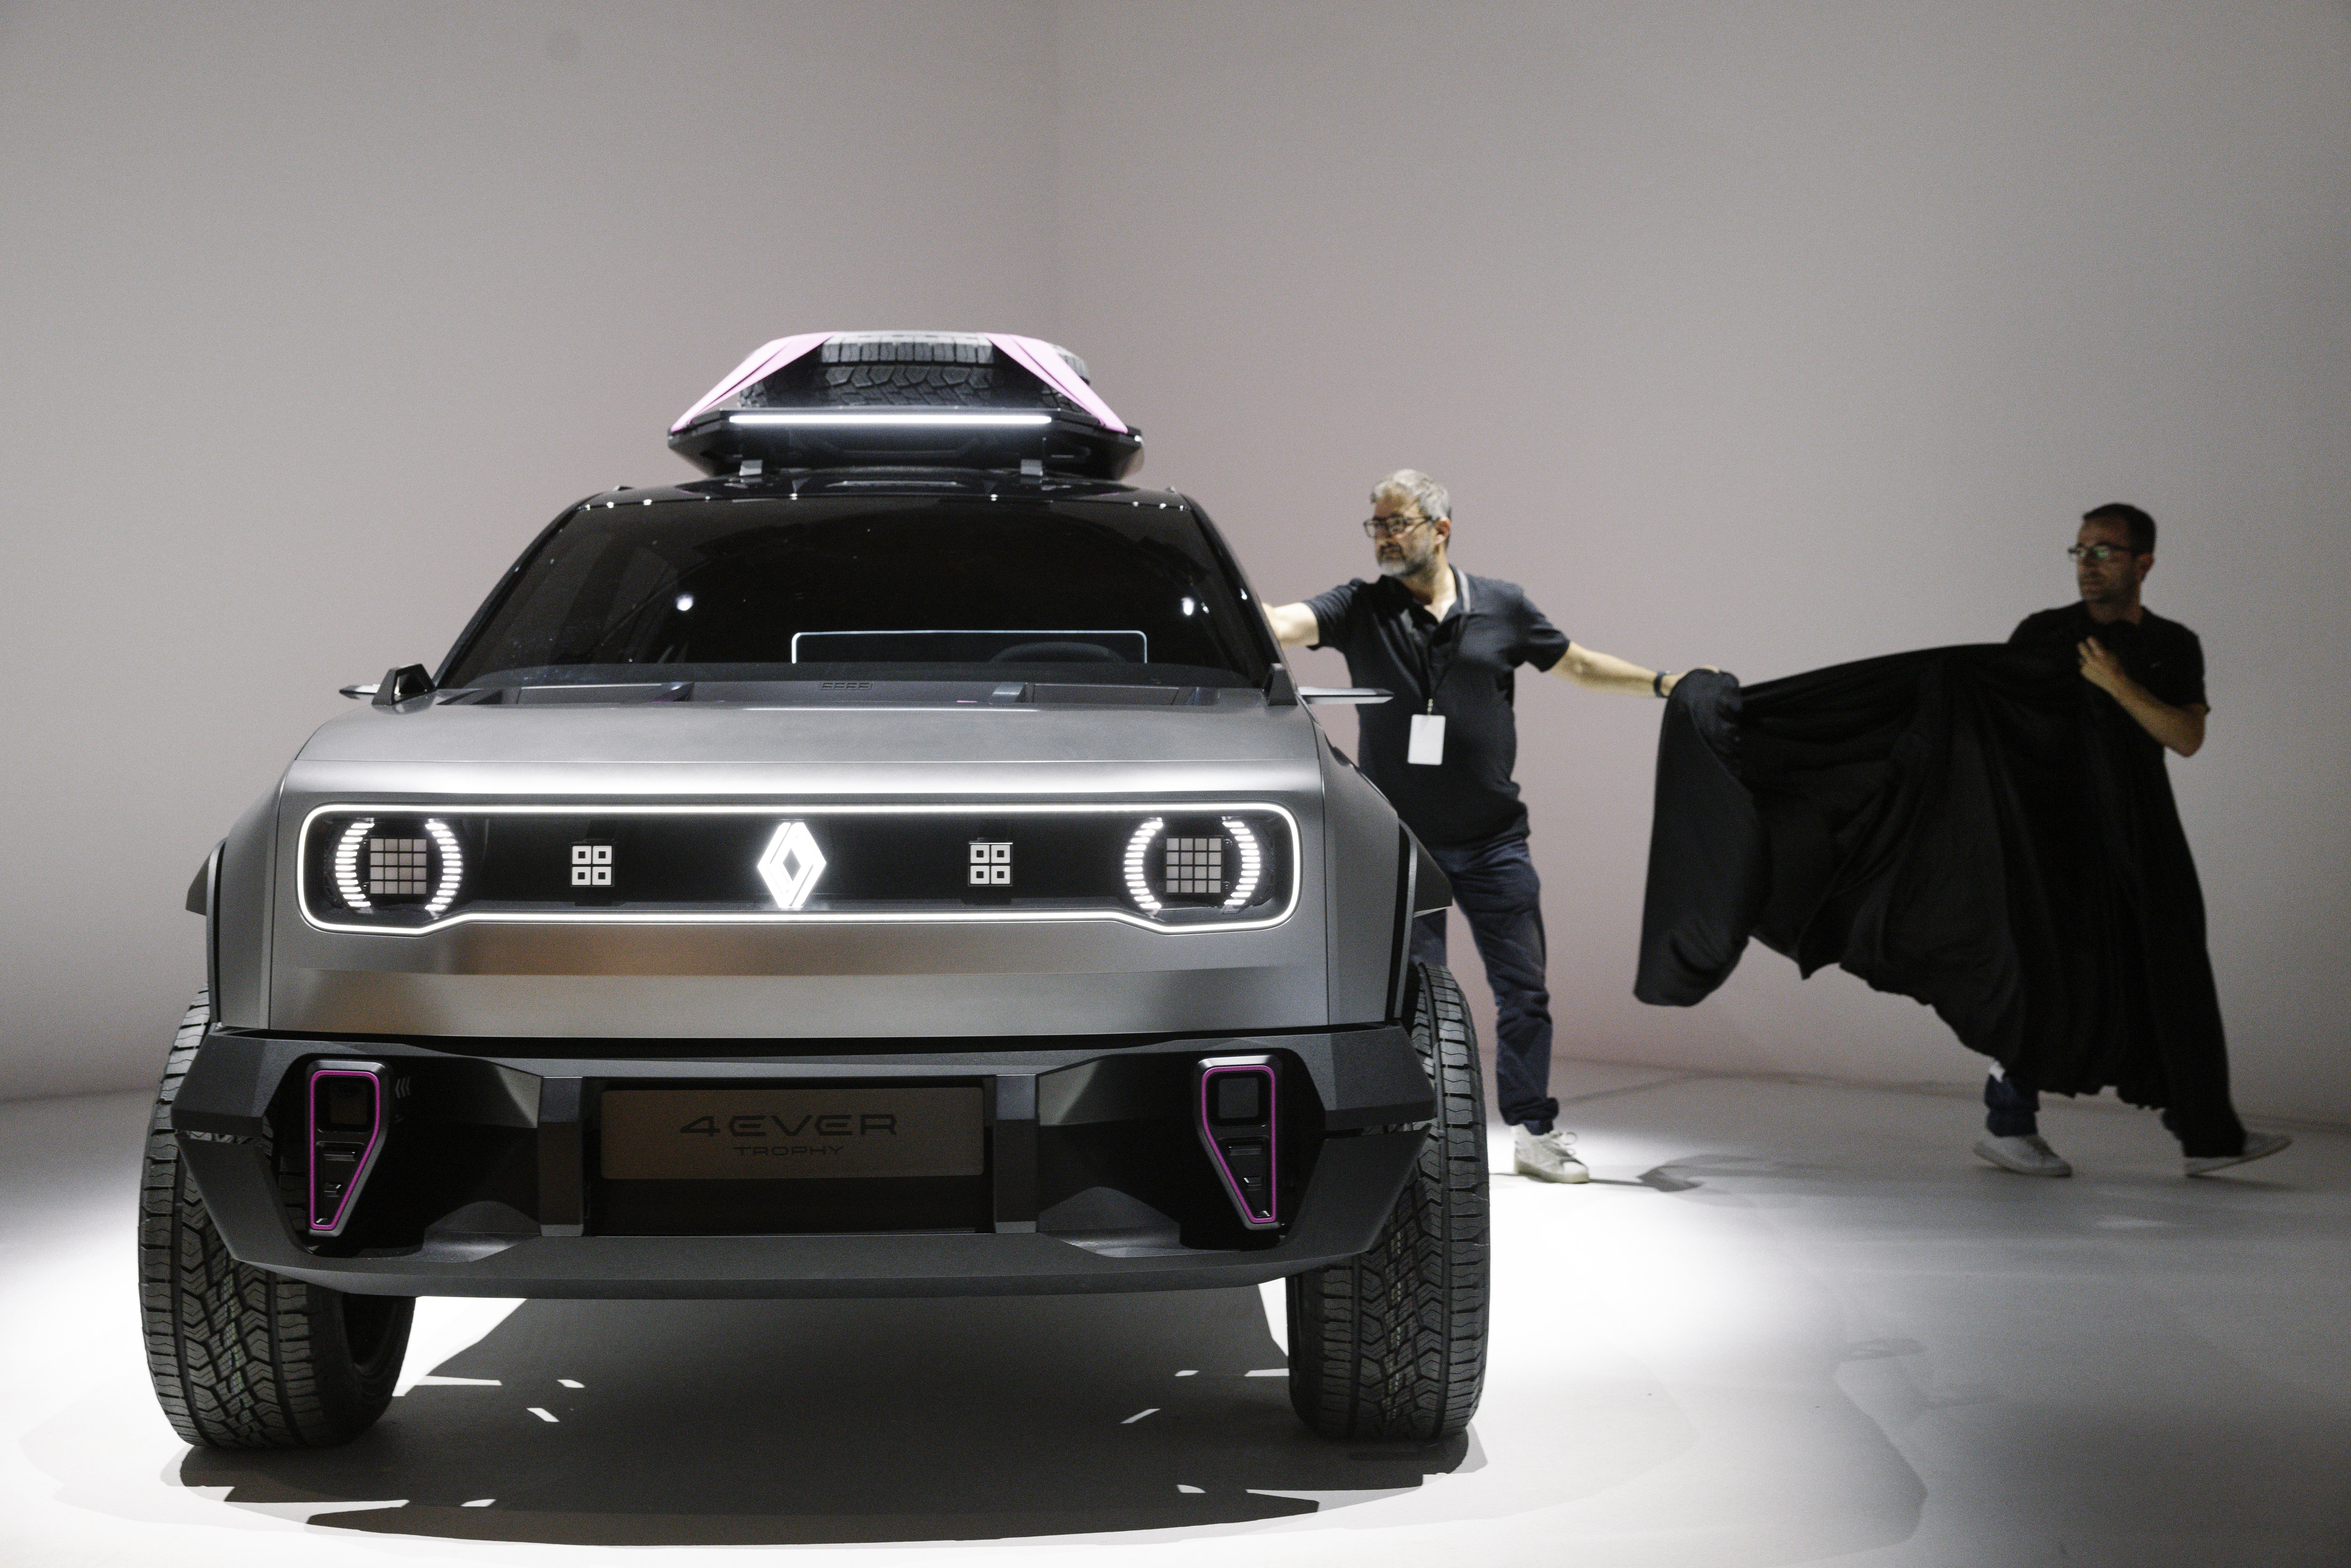 La Renault 4 électrique sera l'un des étendards de la marque au losange pour accélérer son développement dans l'électrique. Le Parisien/Arnaud Dumontier